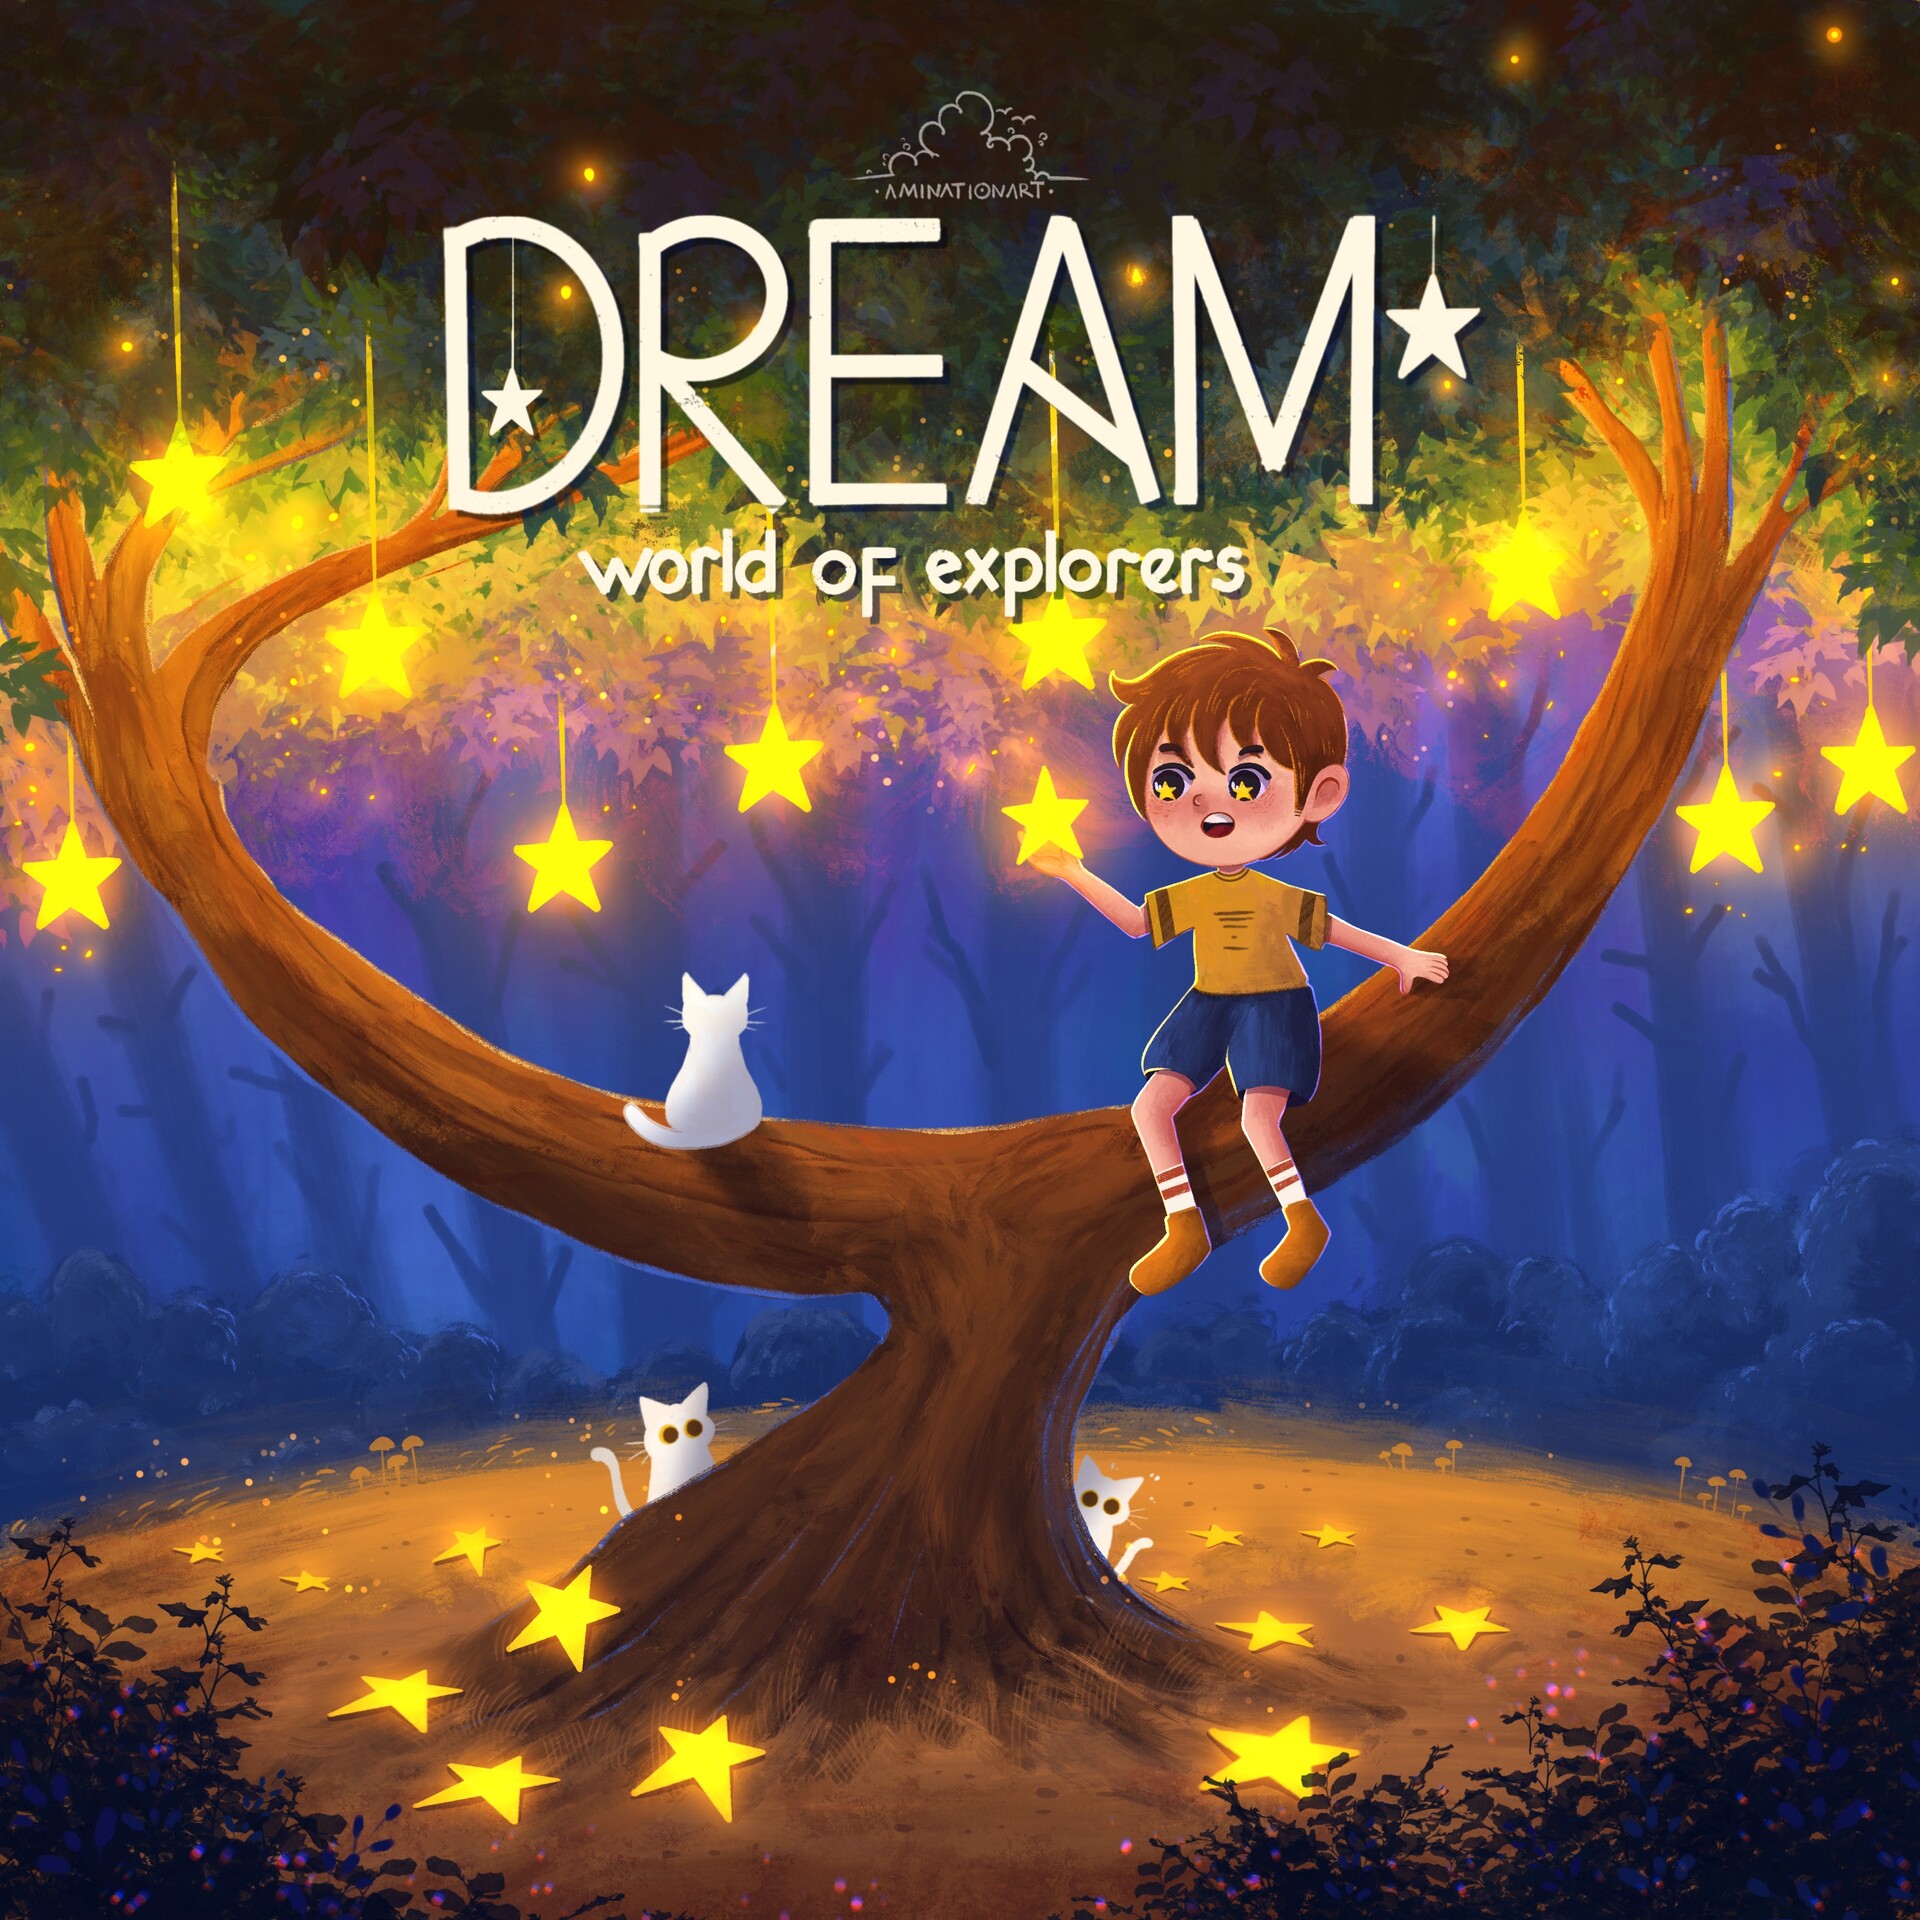 ArtStation - Dream worlds